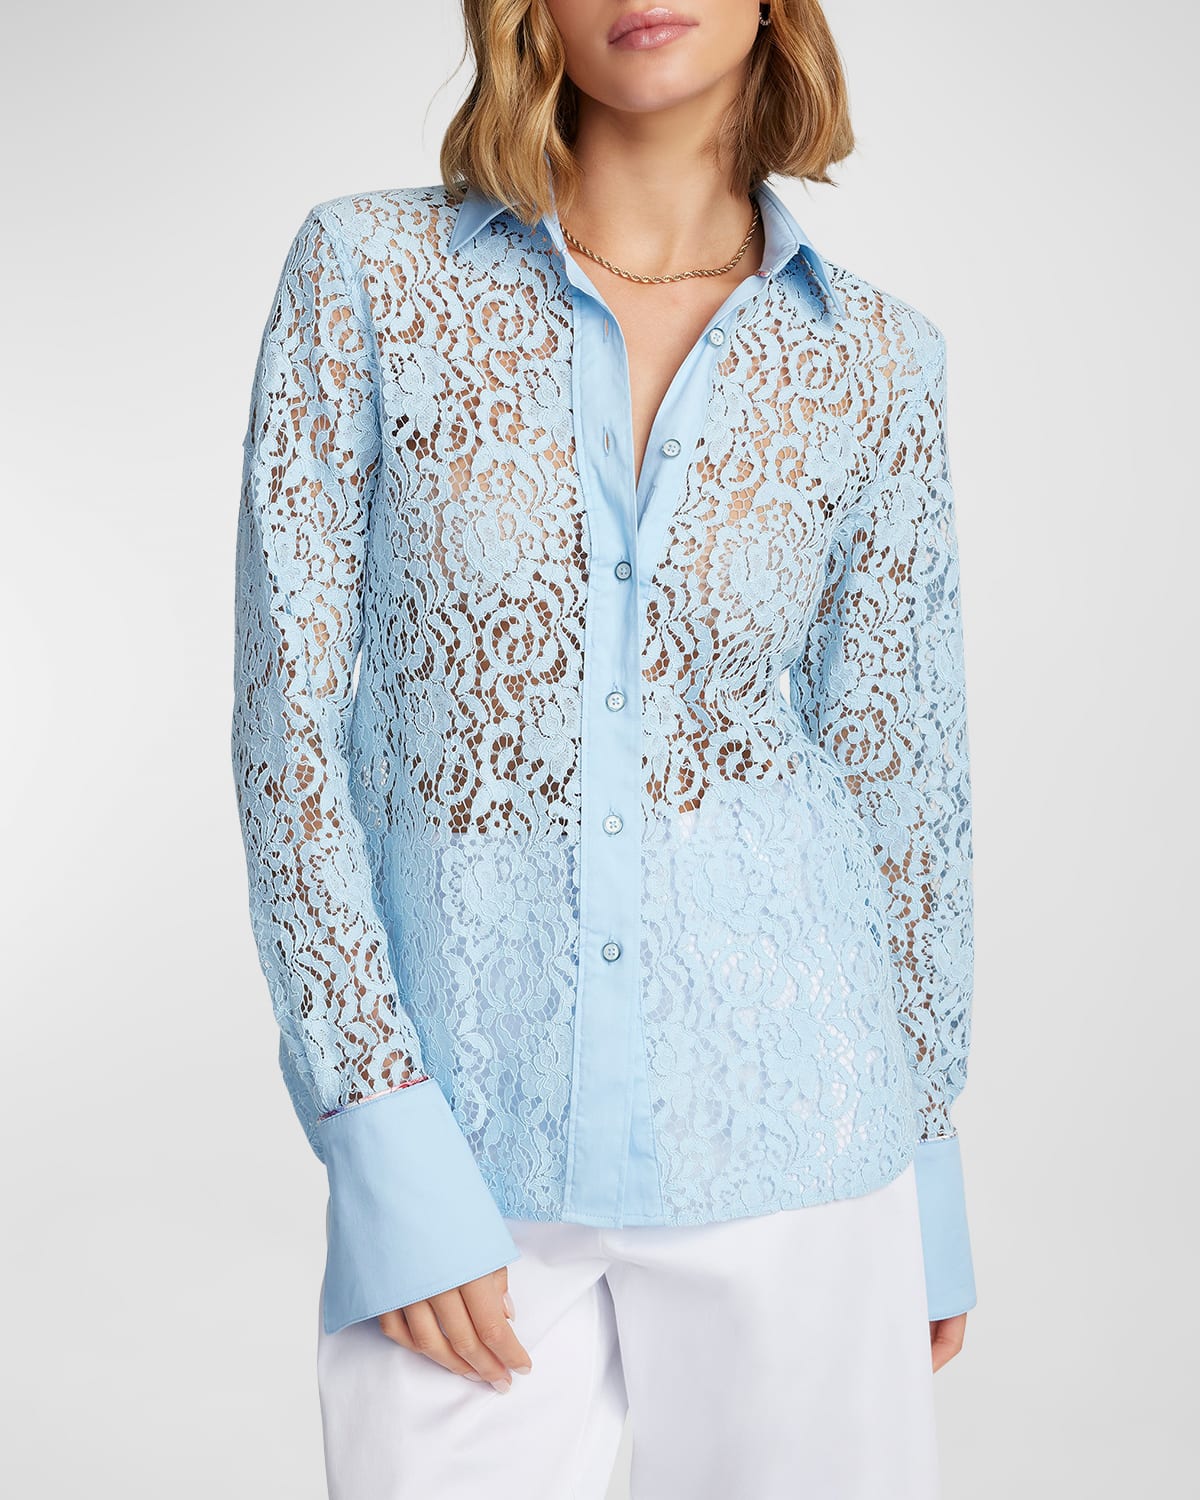 Priscilla Button-Down Floral Lace Shirt